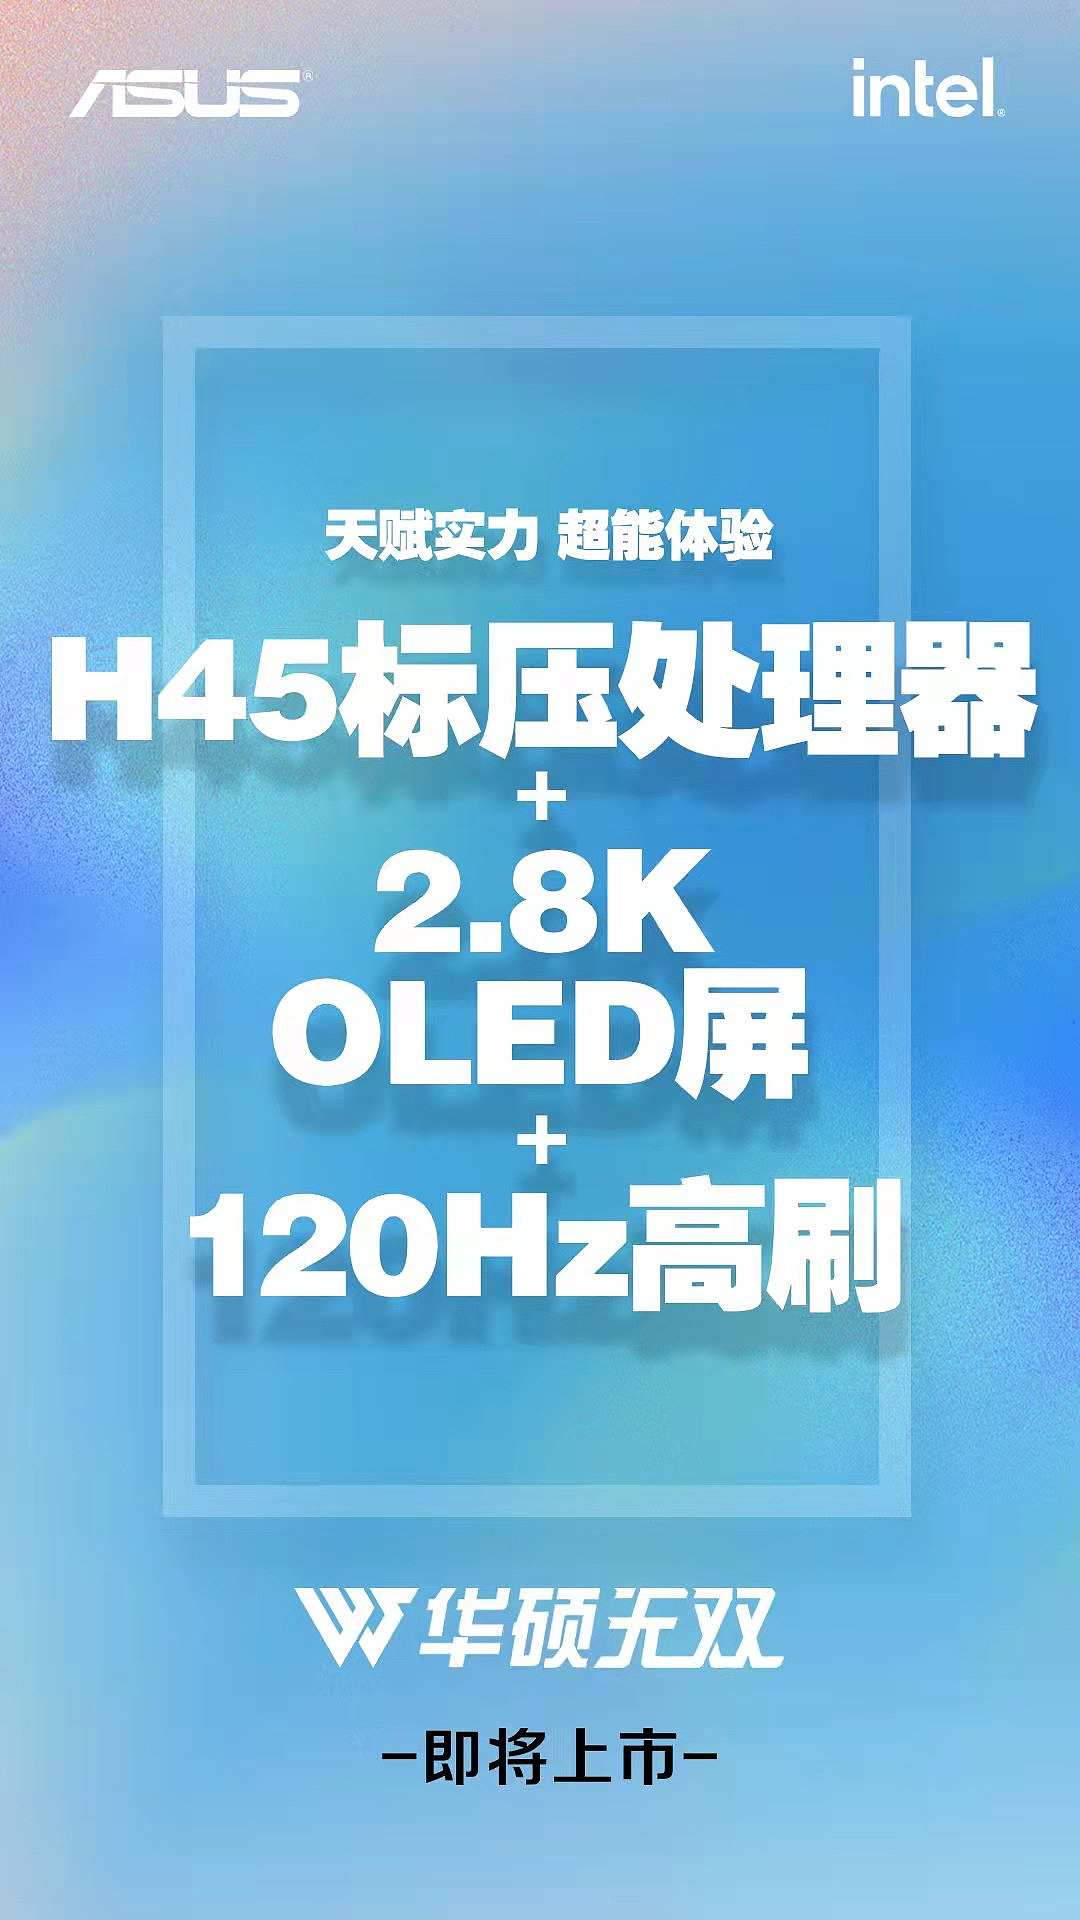 华硕新款无双笔记本 3 月 21 日发布：12 代酷睿 H45 处理器 + 2.8K OLED 120Hz 屏 - 2